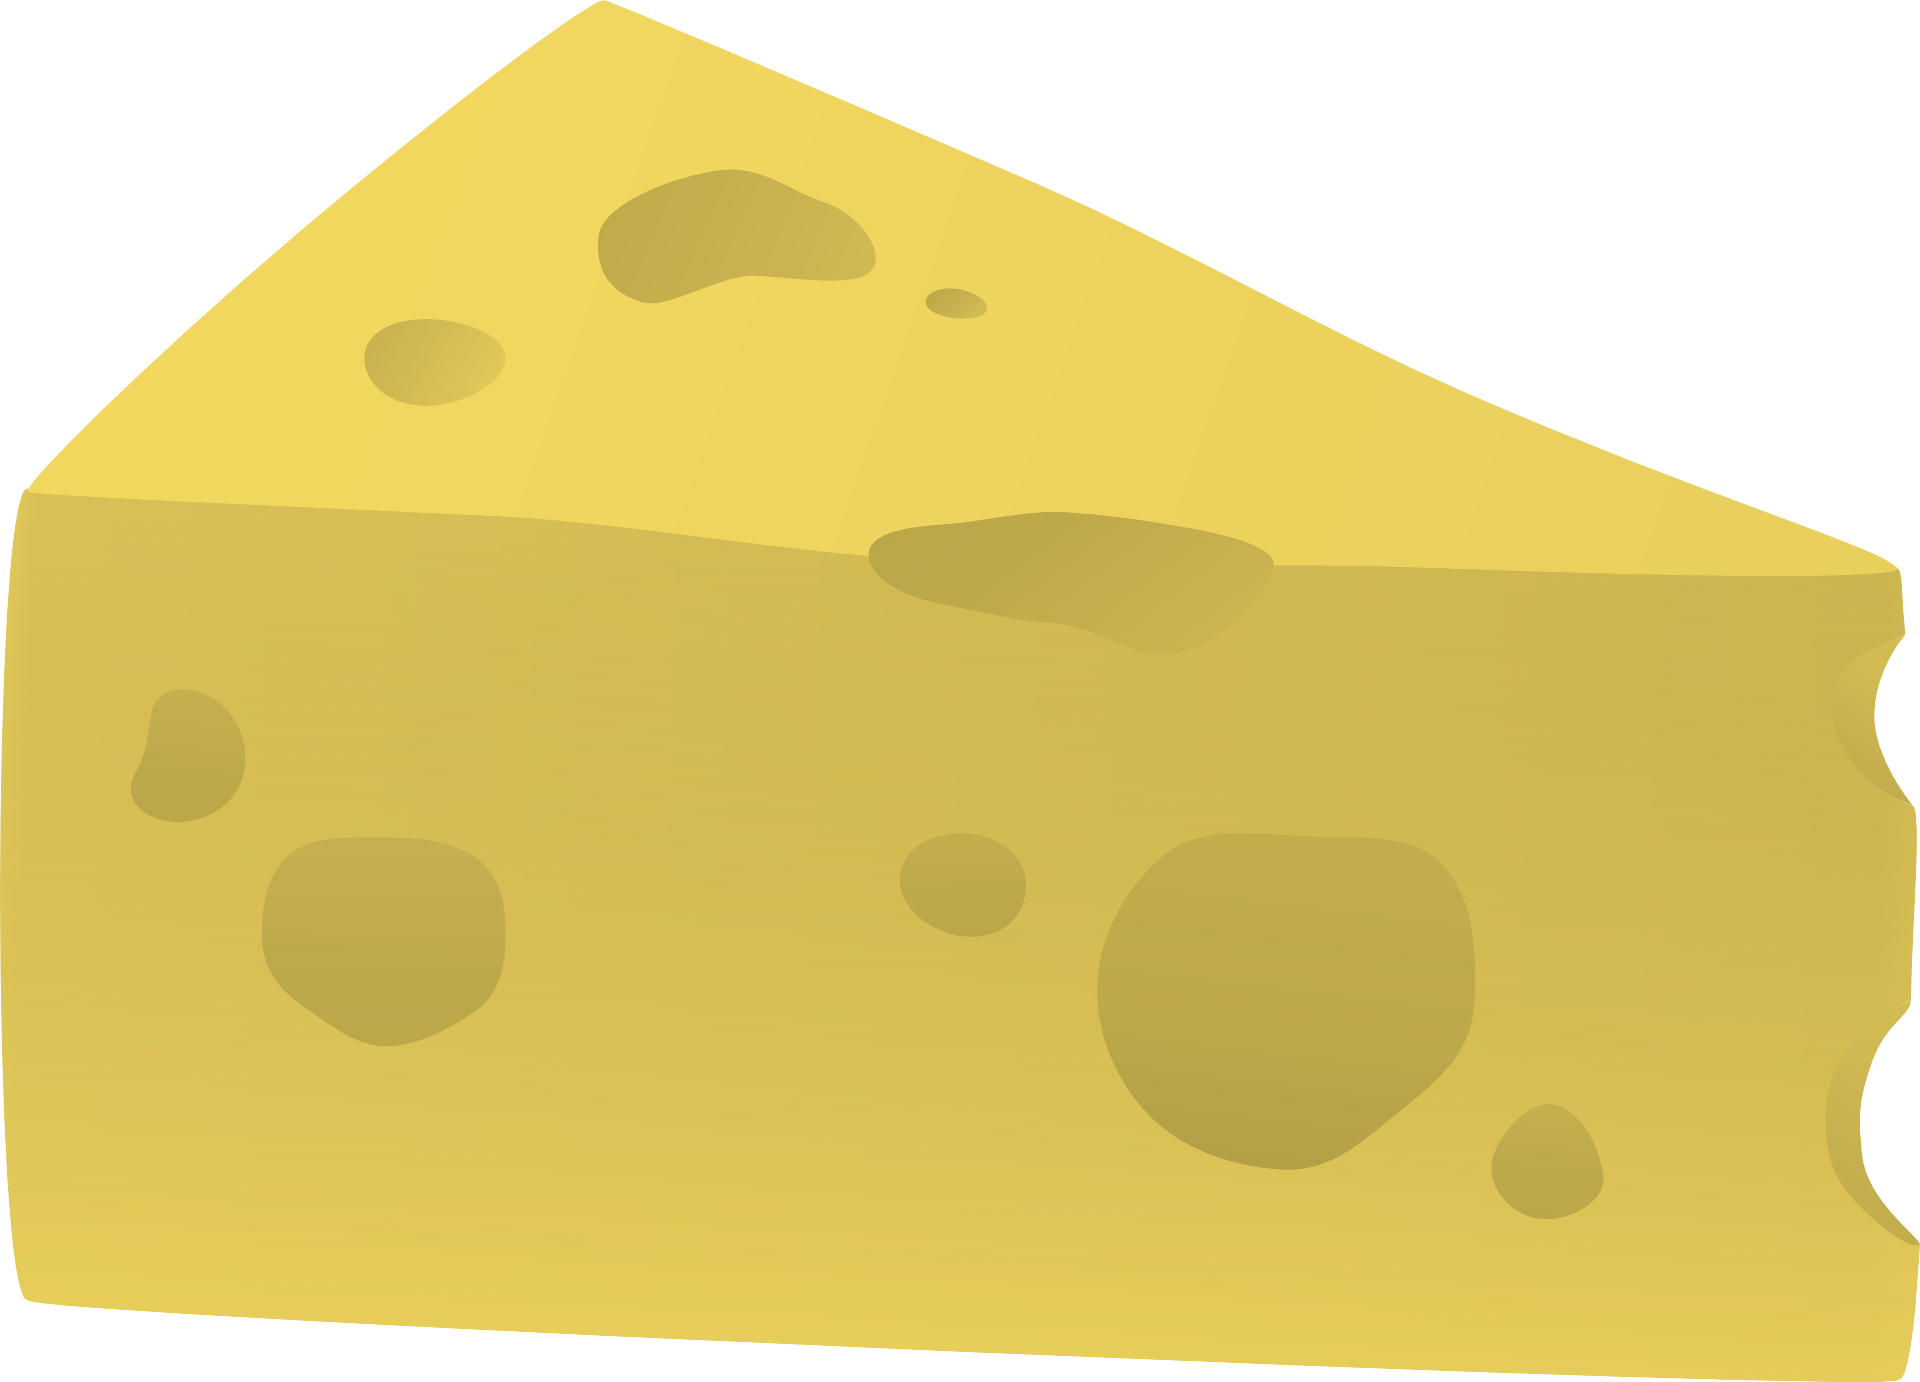 Кусок сыра. Рисунок сыра с дырками для детей. Сыр кусочек. Сыр без фона.